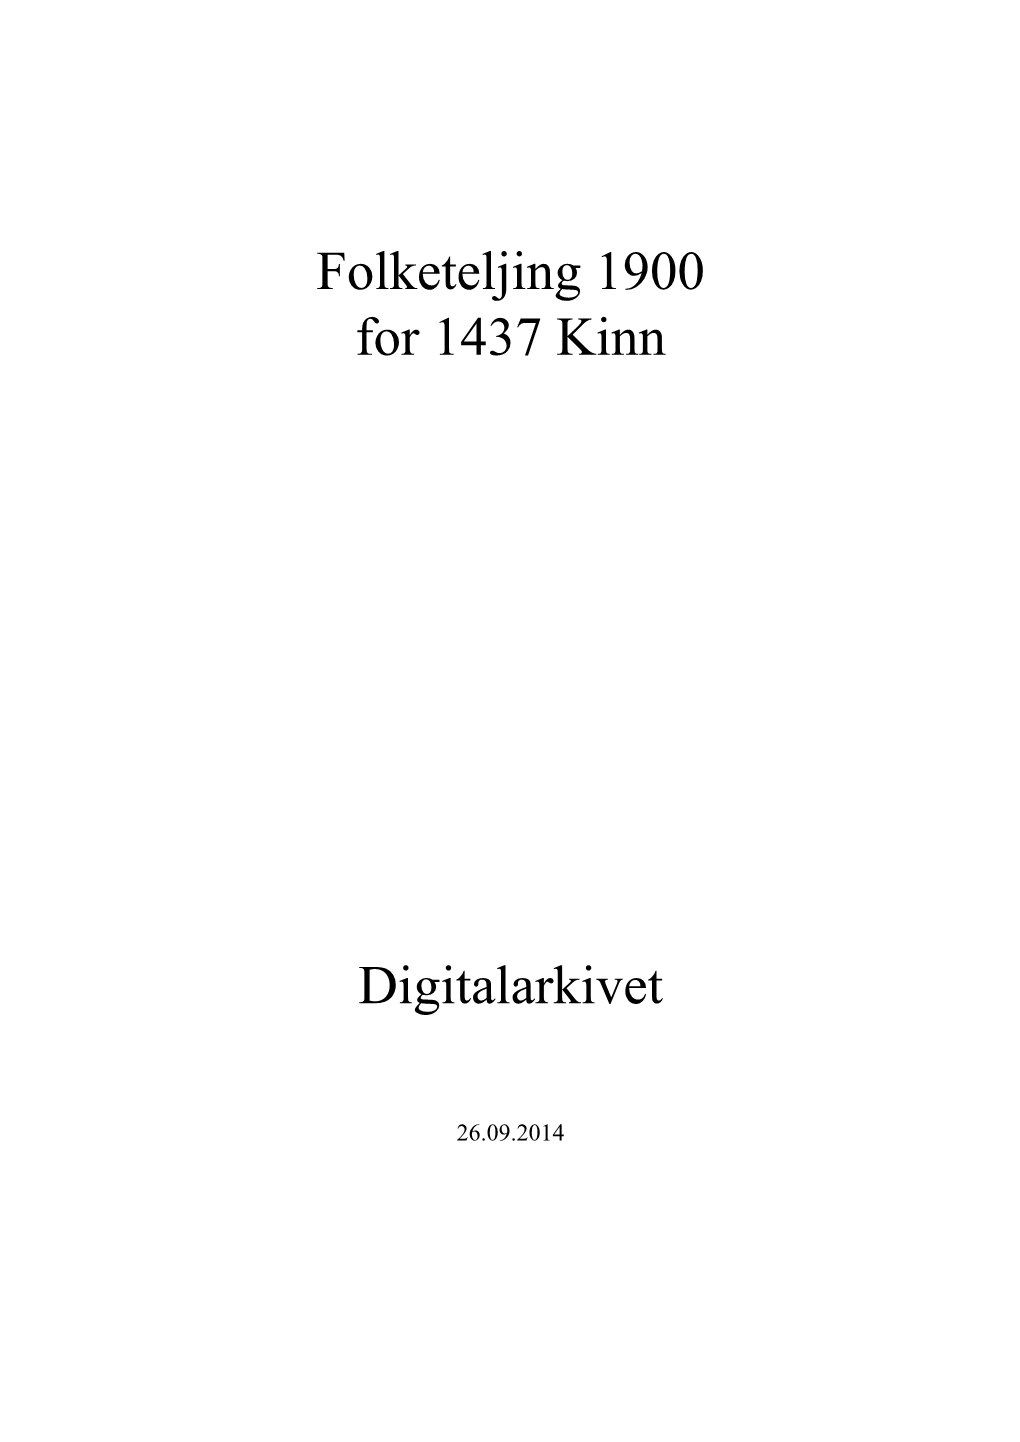 Folketeljing 1900 for 1437 Kinn Digitalarkivet